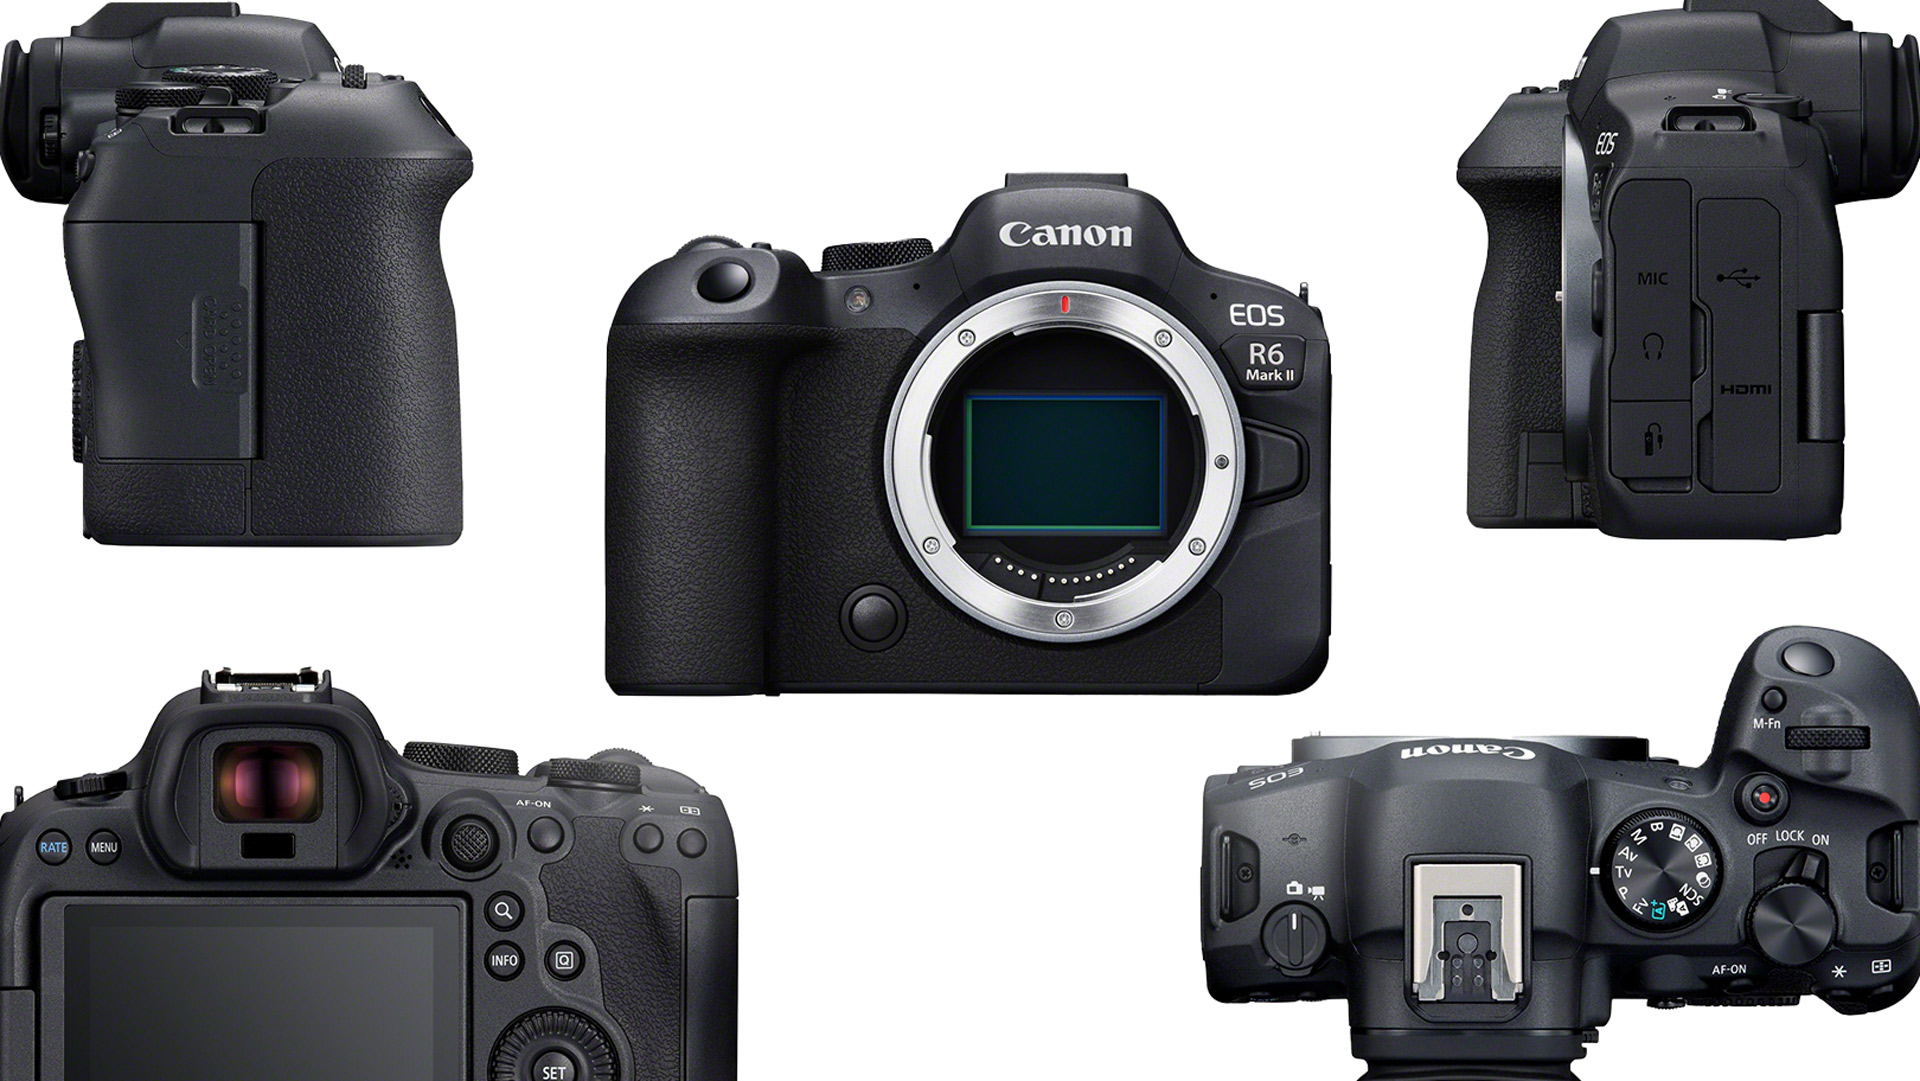 Canon ra mắt máy ảnh EOS R6 Mark II và ống kính RF 135mm mới - Ảnh 1.